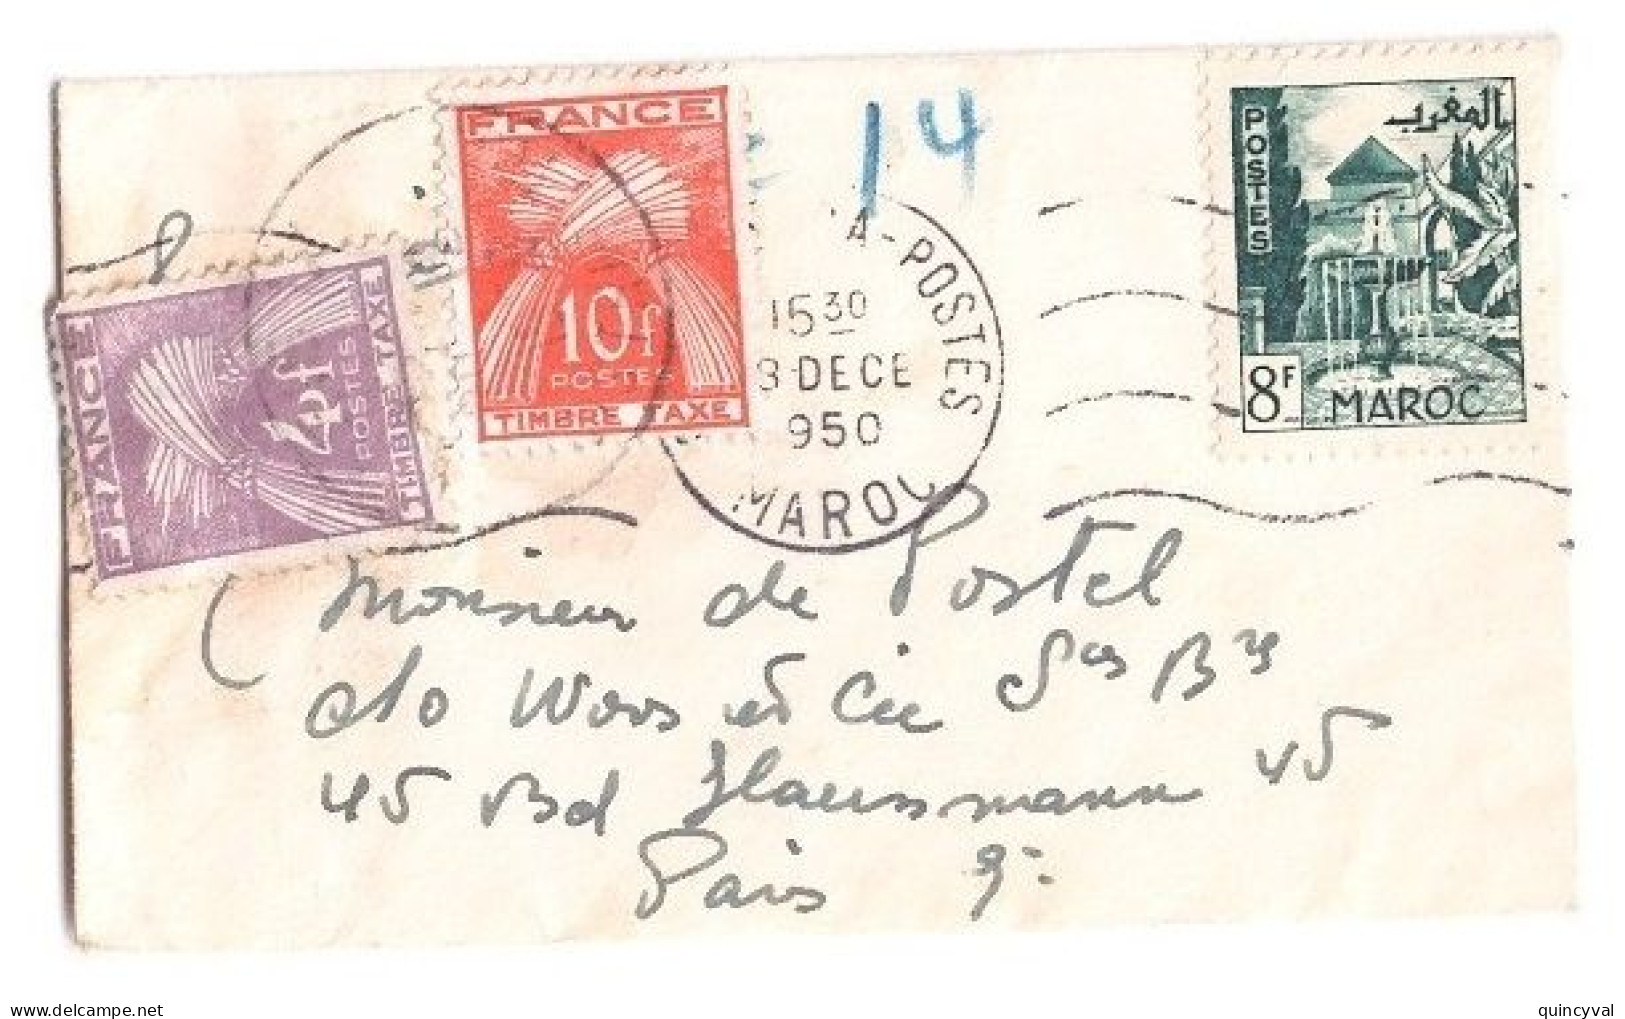 PARIS Carte De Visite Mignonnette Origine Maroc Affranchie 8 F Taxe 14 F Gerbes Yv T 86 84 Ob 1950 - 1859-1959 Lettres & Documents